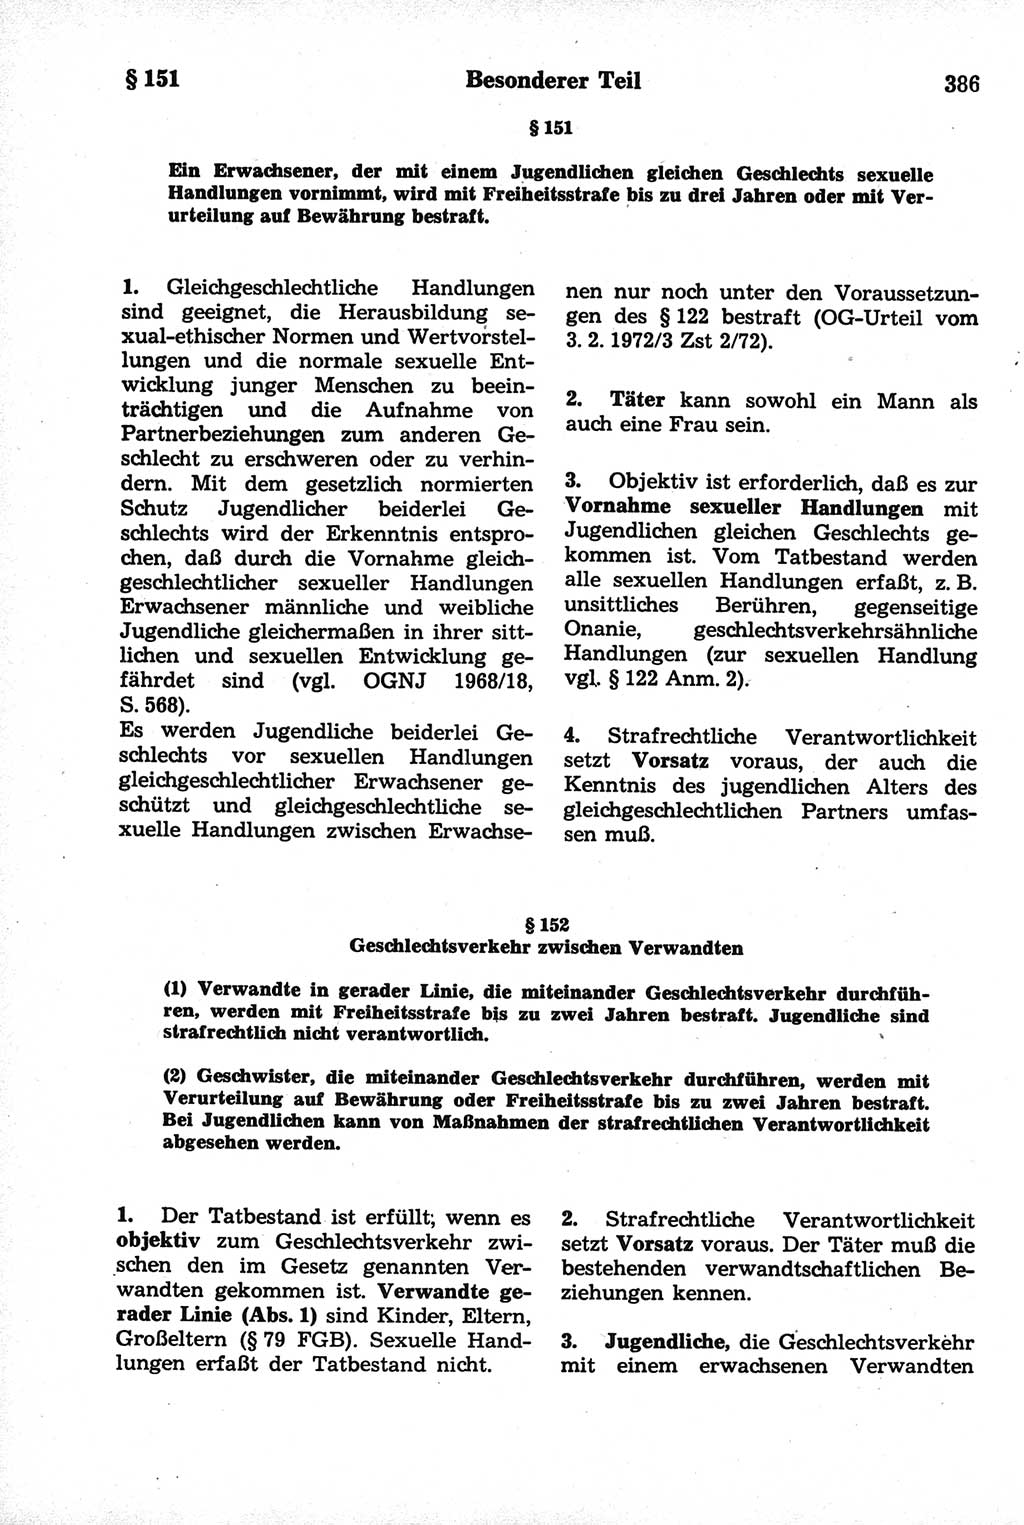 Strafrecht der Deutschen Demokratischen Republik (DDR), Kommentar zum Strafgesetzbuch (StGB) 1981, Seite 386 (Strafr. DDR Komm. StGB 1981, S. 386)